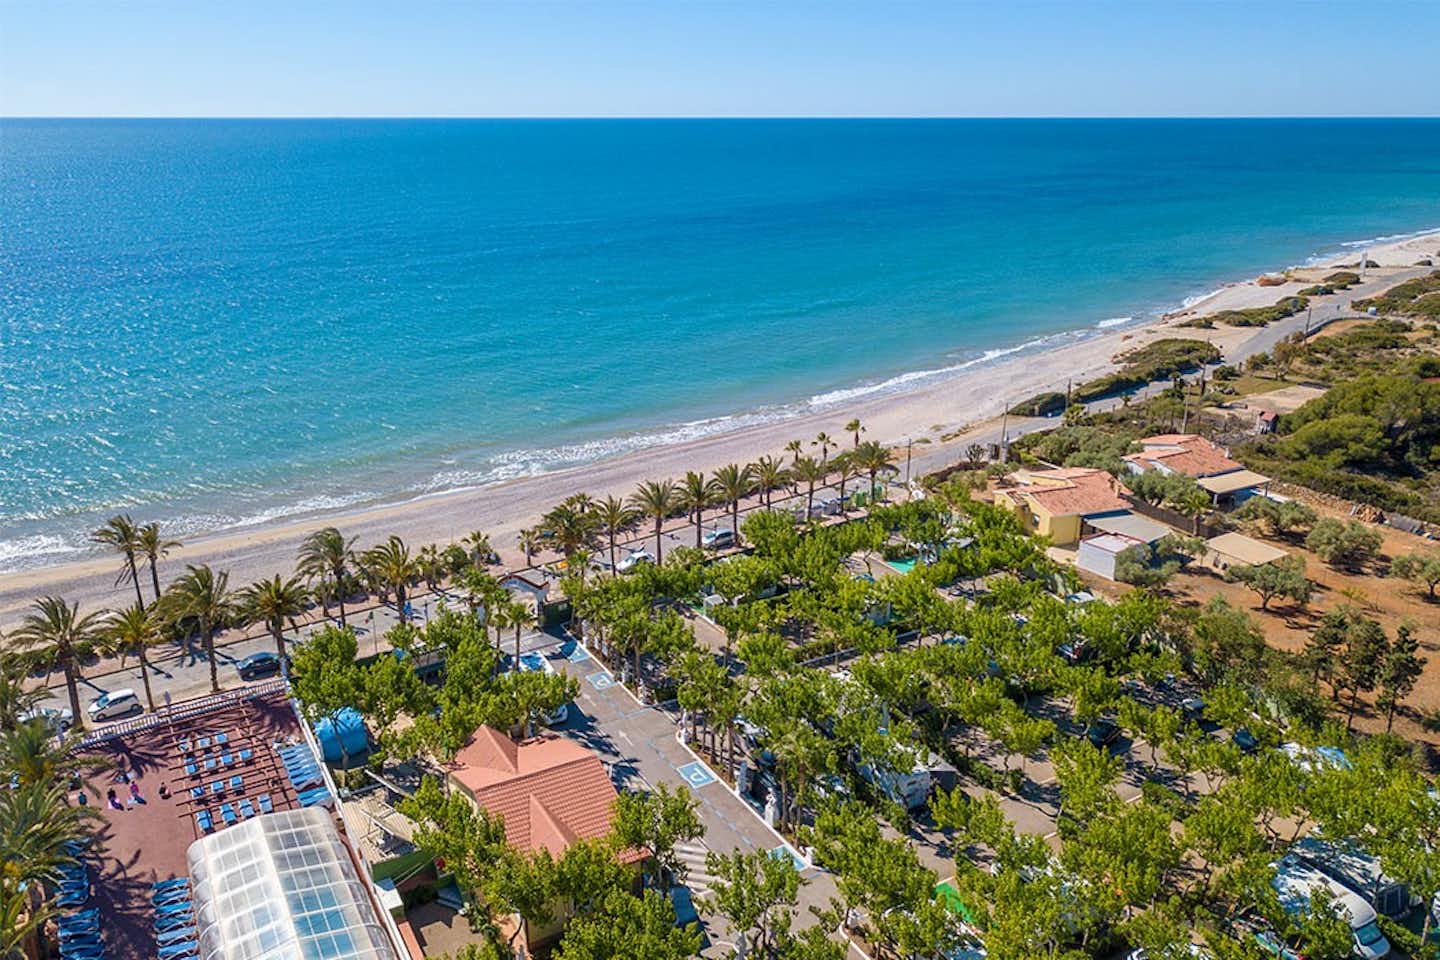 Camping Playa Tropicana  -  Campingplatz mit Strand am Mittelmeer aus der Vogelperspektive